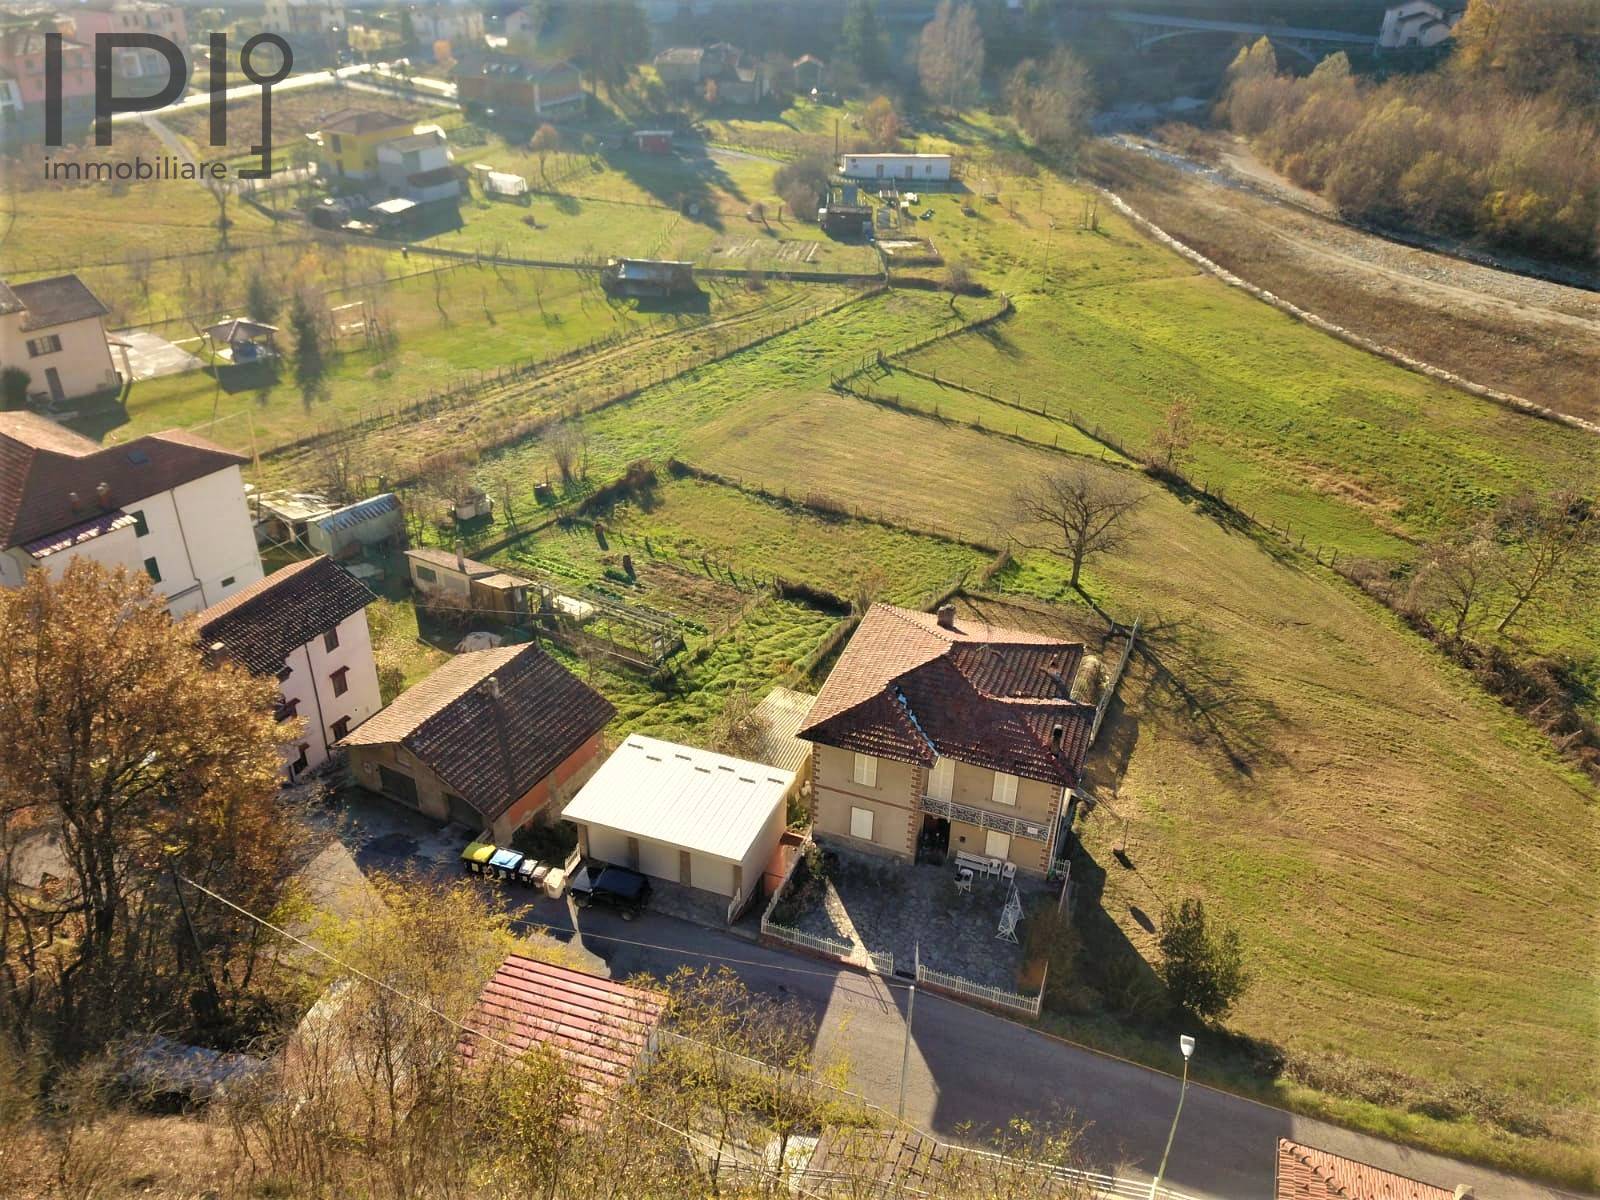 Villa in vendita a Millesimo, 22 locali, zona afredda, prezzo € 150.000 | PortaleAgenzieImmobiliari.it